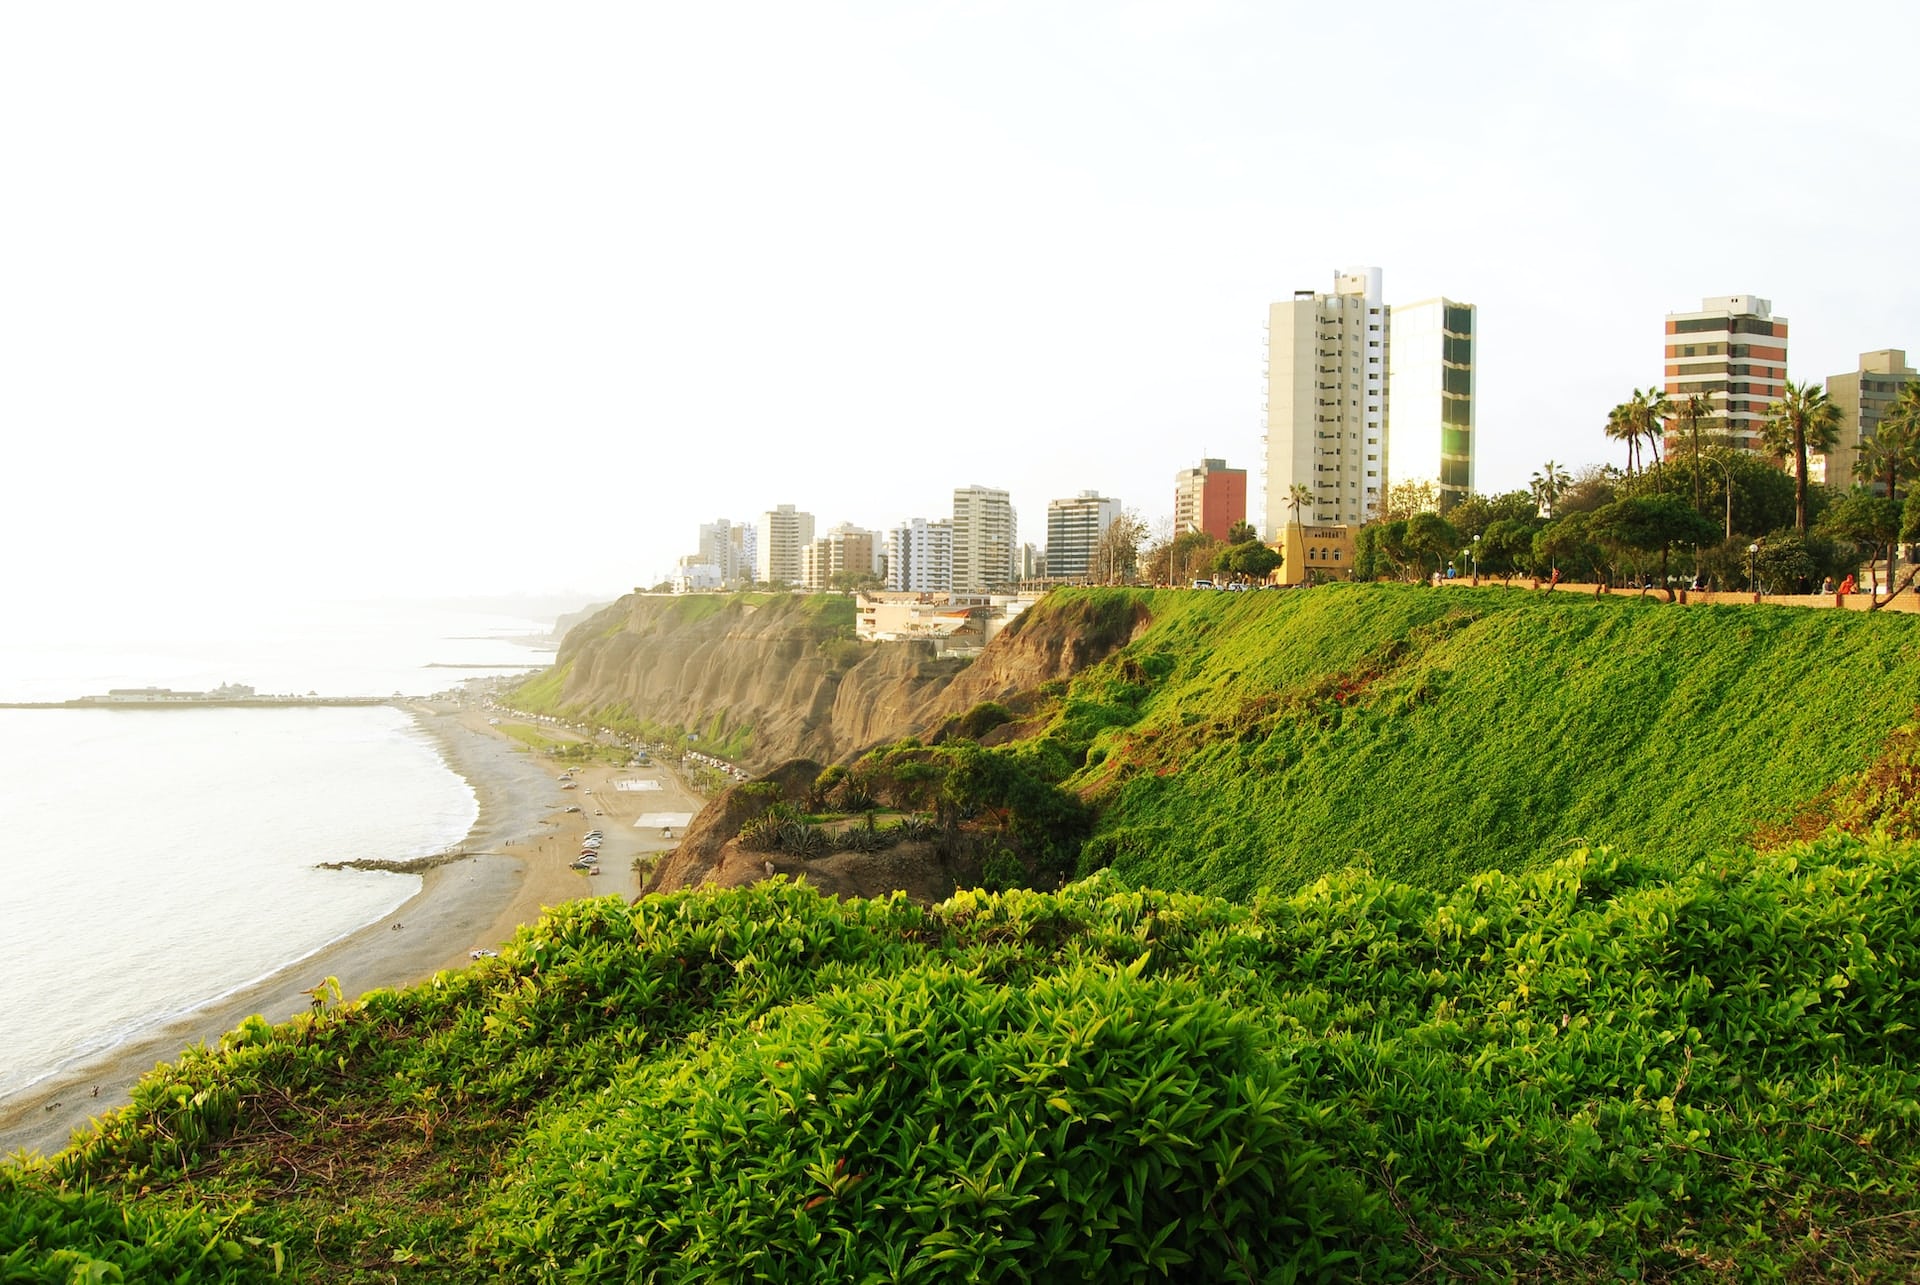 Conosciuta per la sua atmosfera vibrante, gli splendidi paesaggi e l'ambiente sicuro, Miraflores è una delle migliori zone in cui soggiornare a Lima.